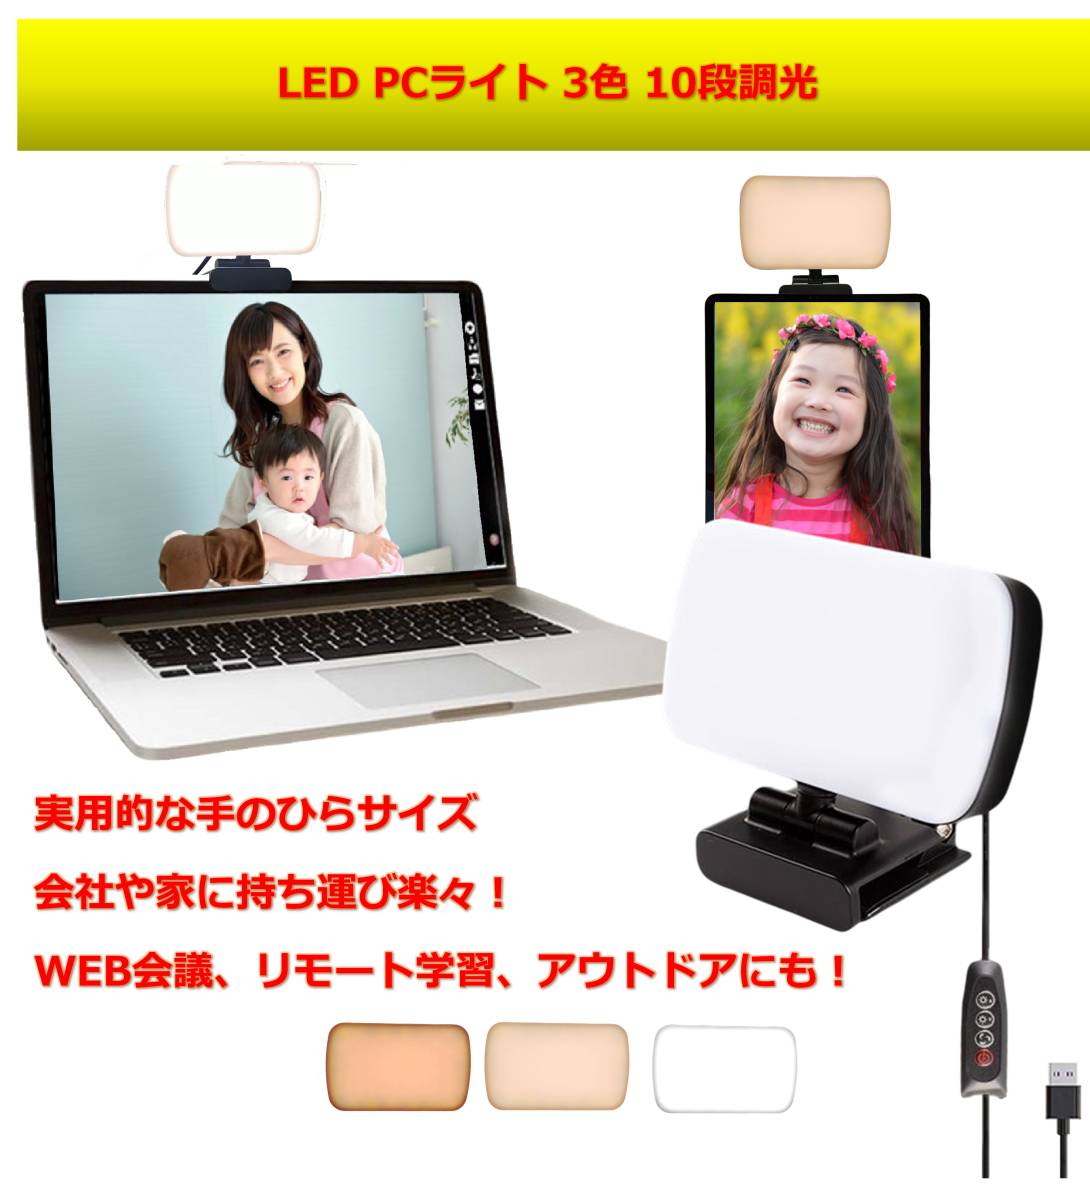  LED スクエアライト 3色モード 10段調光 USB給電 zoom PCライト ビデオ ライト テレワーク 卓上 オンライン会議 撮影用 web会議 Webカメラ